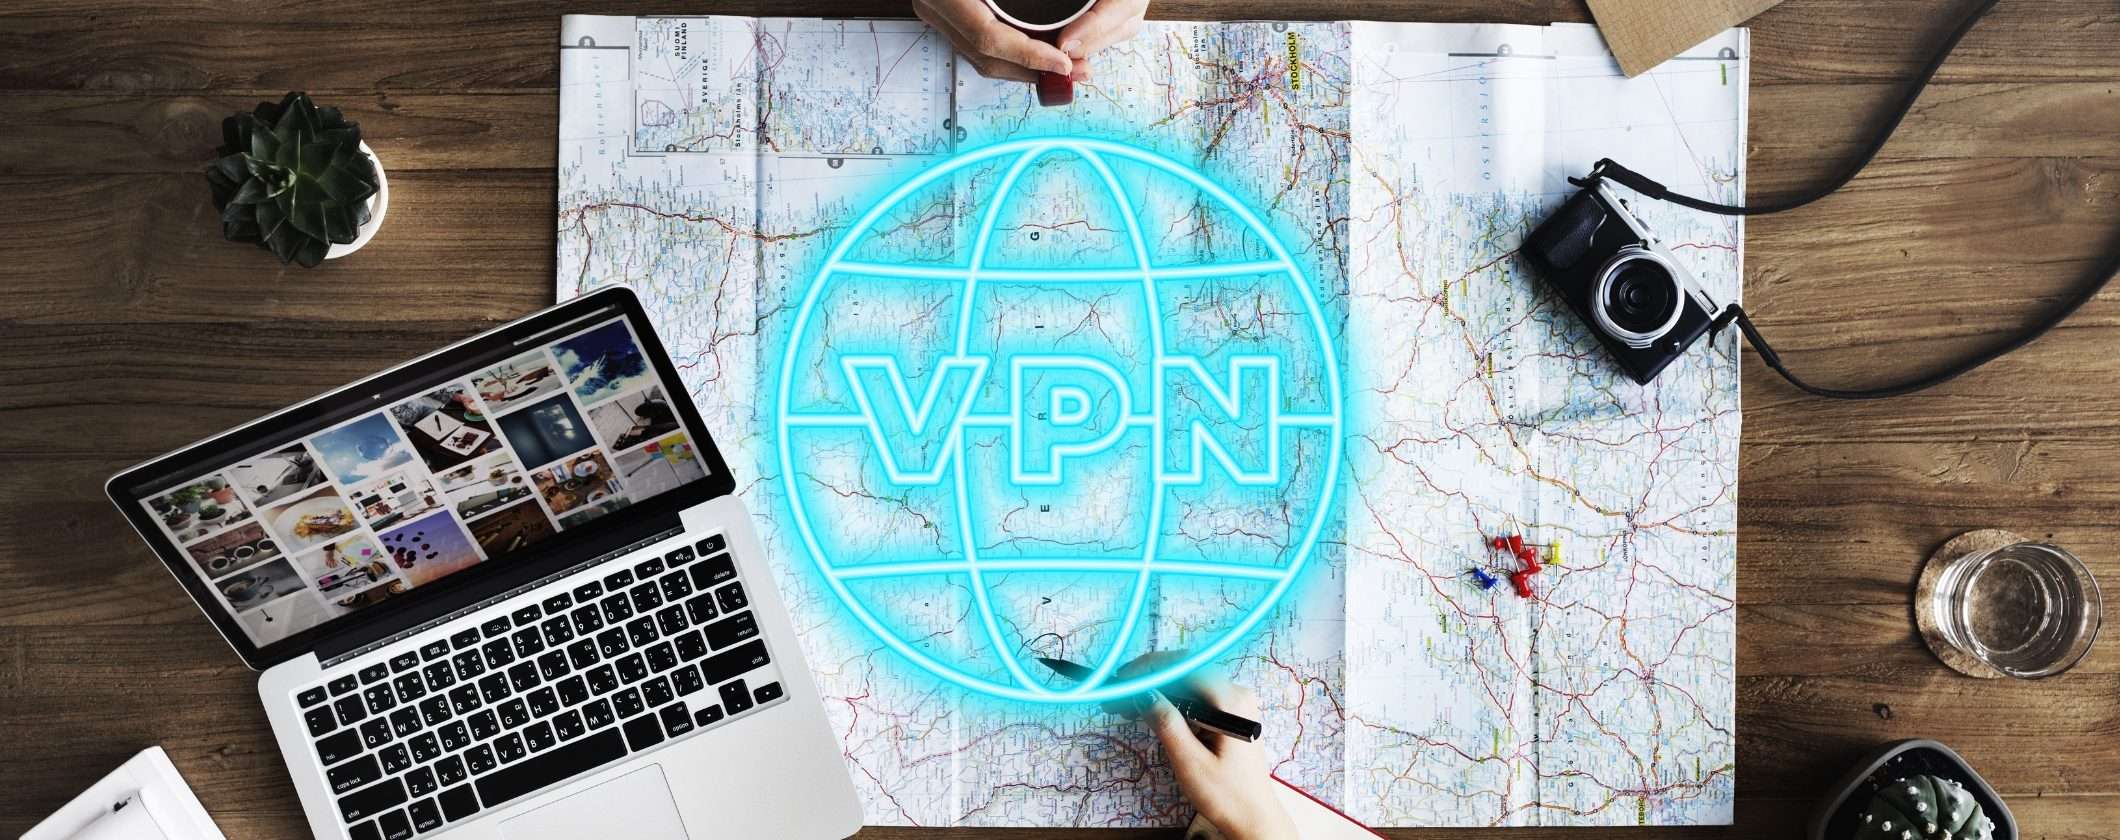 Perché devi avere una VPN attiva quando viaggi